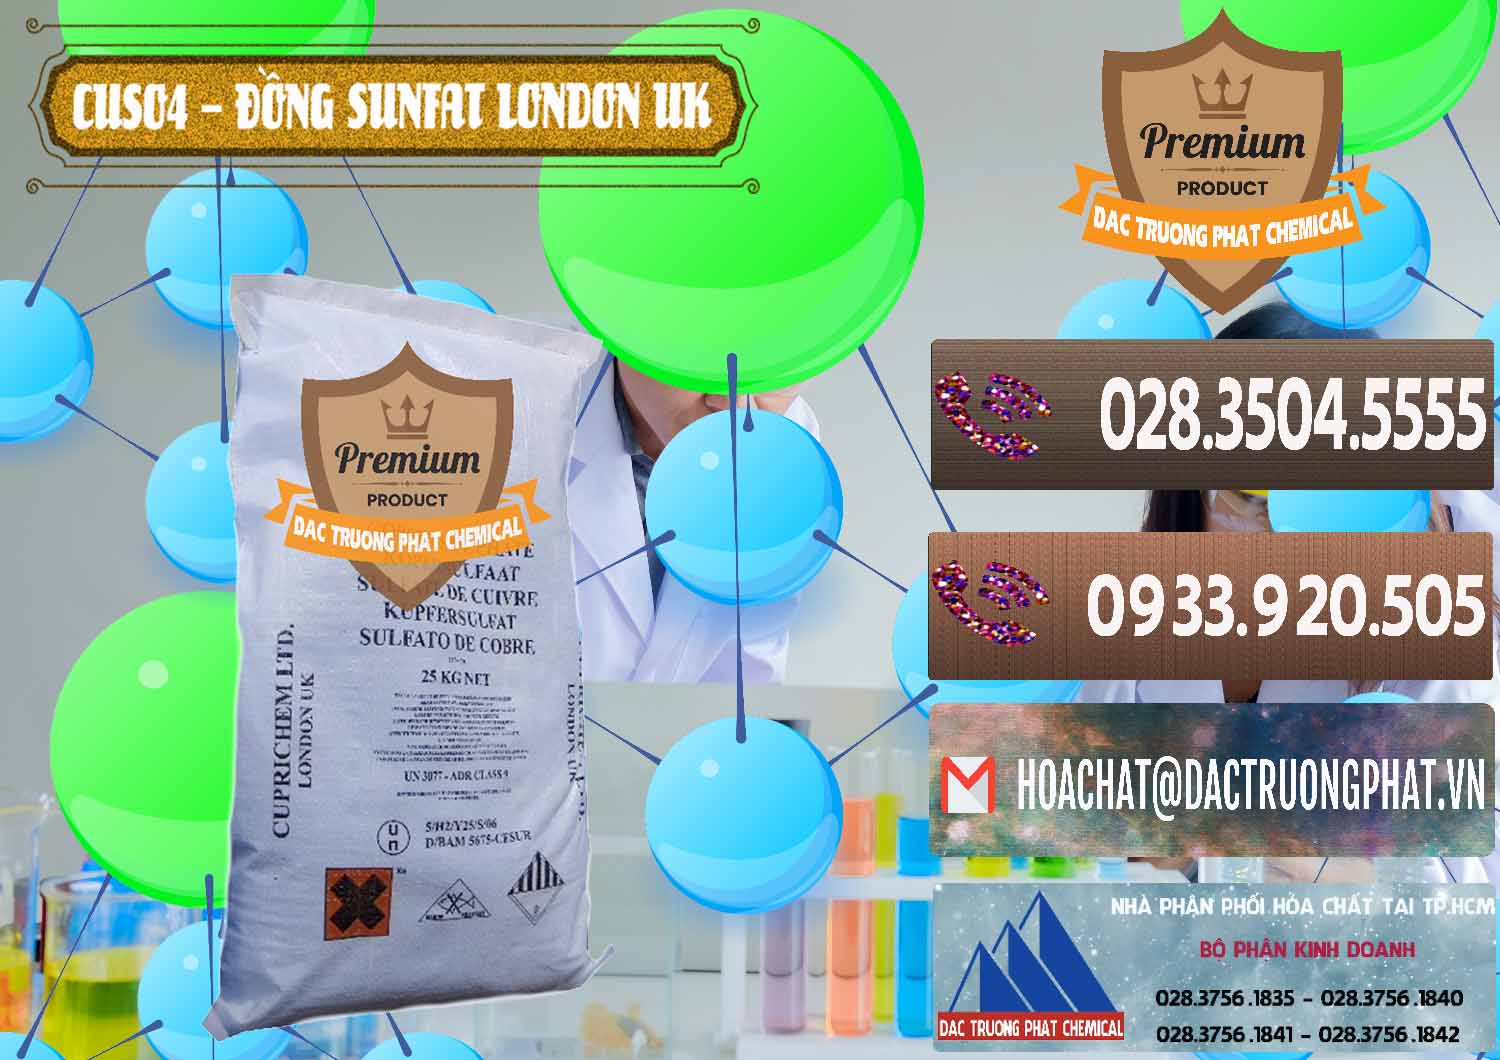 Đơn vị chuyên cung cấp & bán CuSO4 – Đồng Sunfat Anh Uk Kingdoms - 0478 - Phân phối & kinh doanh hóa chất tại TP.HCM - hoachatviet.net